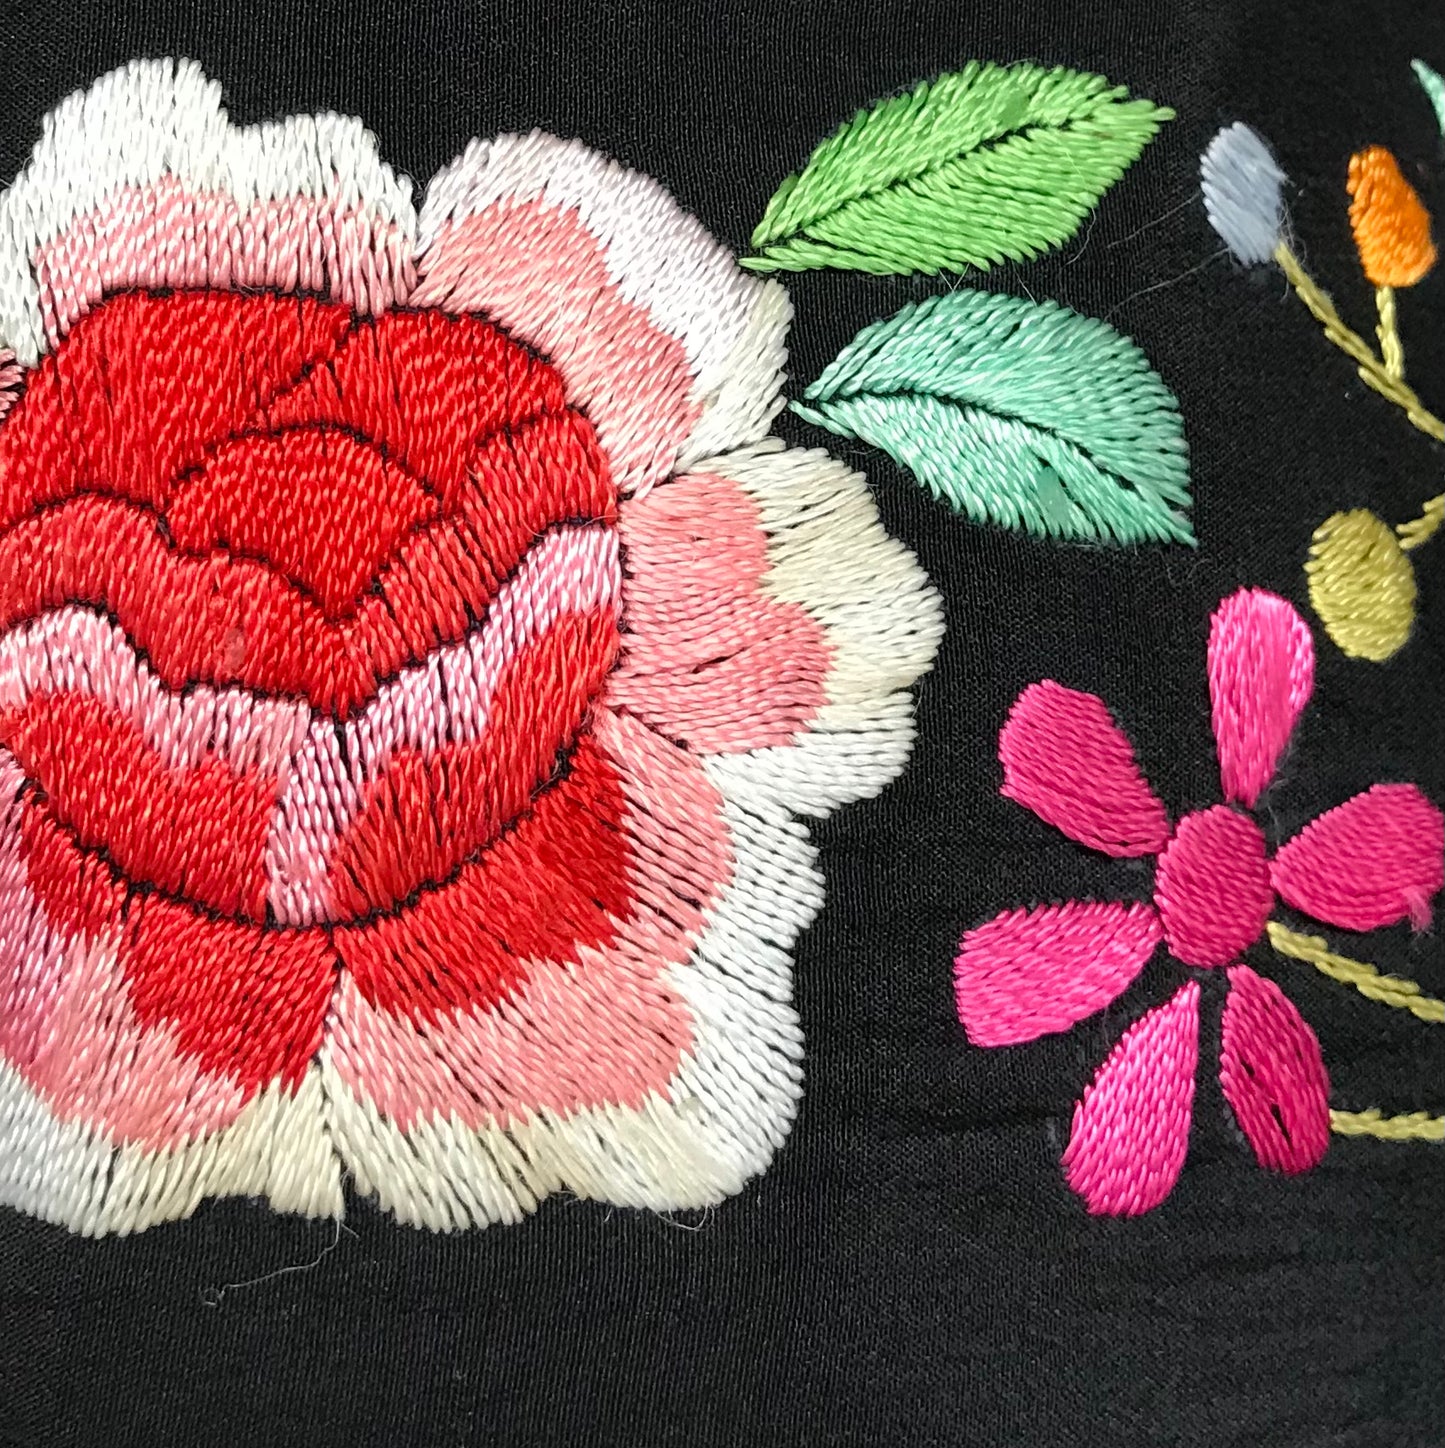 Vintage Flower Embroidery Vest 〜GERARD BY PeGe〜 [I25042]